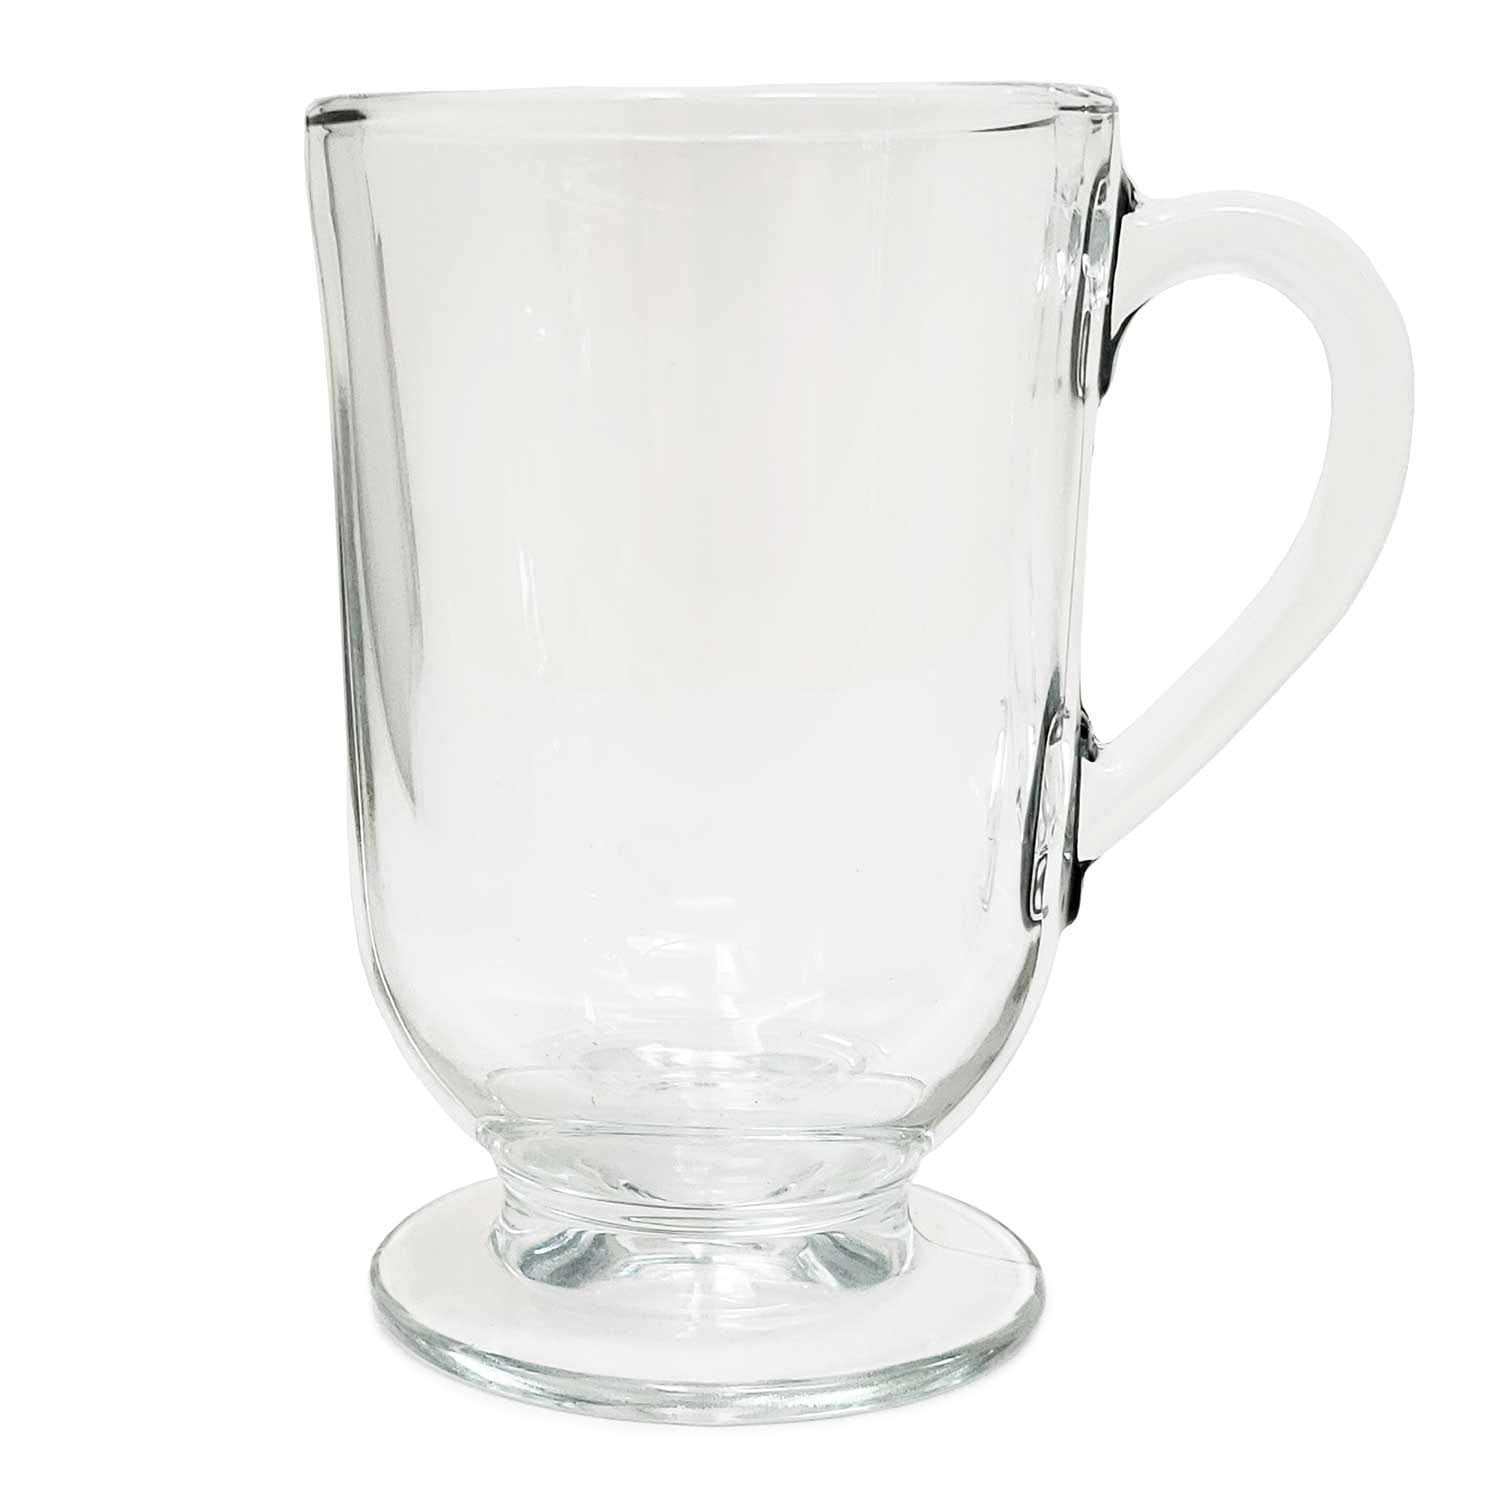 12oz Glass Mug - Threshold™